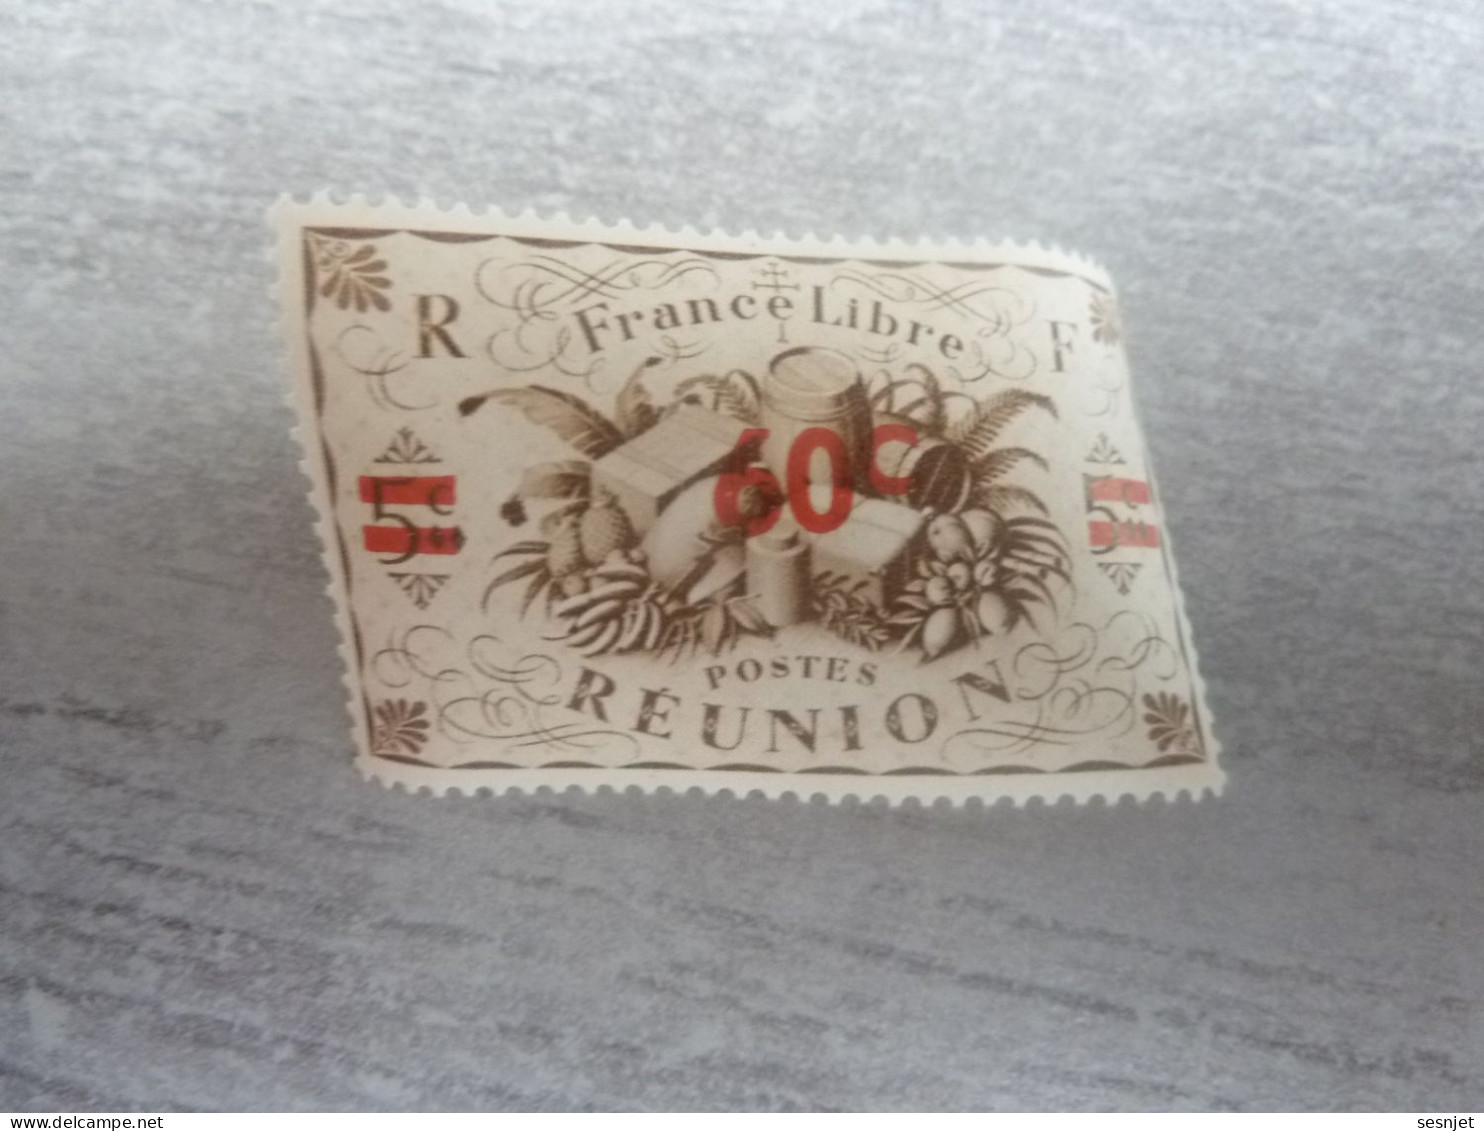 Série De Londres - France-Libre - Réunion  - 60c. S. 5c. - Yt 253 - Sépia - Neuf Sans Trace De Charnière - Année 1943 - - Unused Stamps